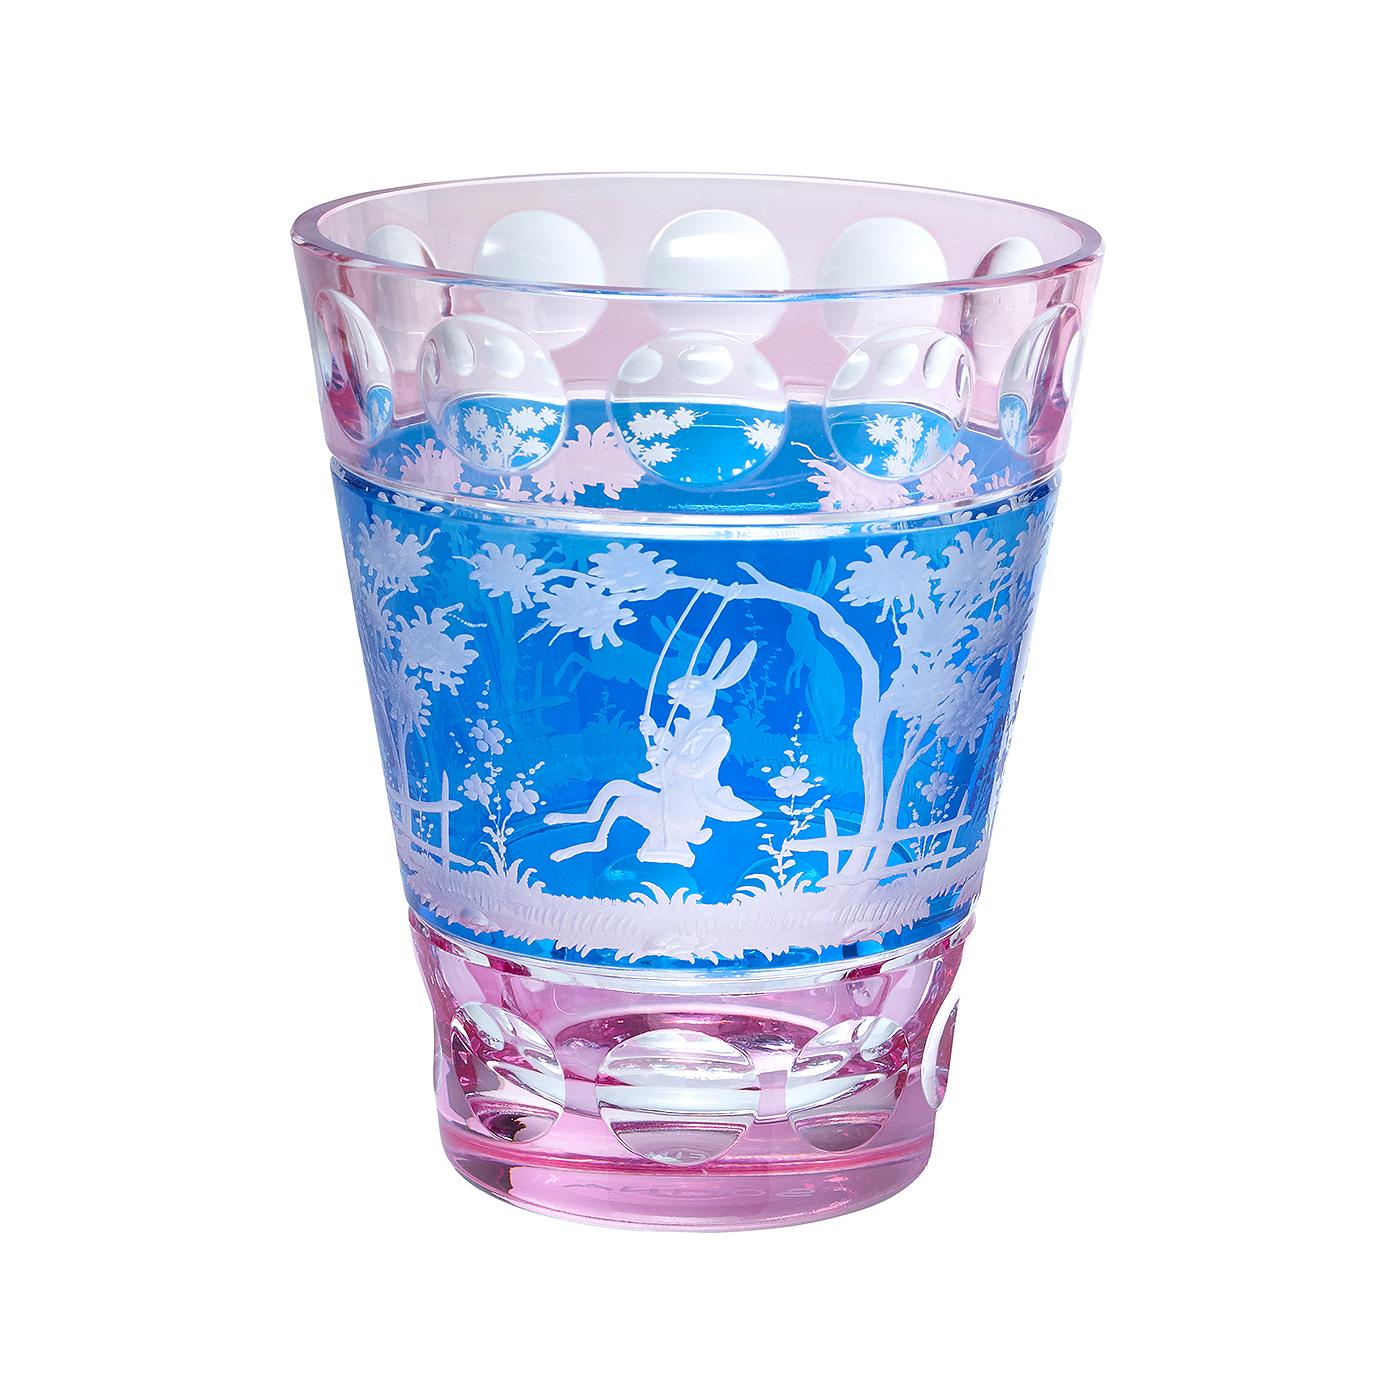 Vase aus mundgeblasenem Kristall in rosa und blauem Glas mit einer Szene aus dem Orient. Das Dekor ist ein Osterdekor mit 2 freihändig gravierten Hasen im naturalistischen Stil. Vollständig mundgeblasen und handgraviert in Bayern/Deutschland. Das